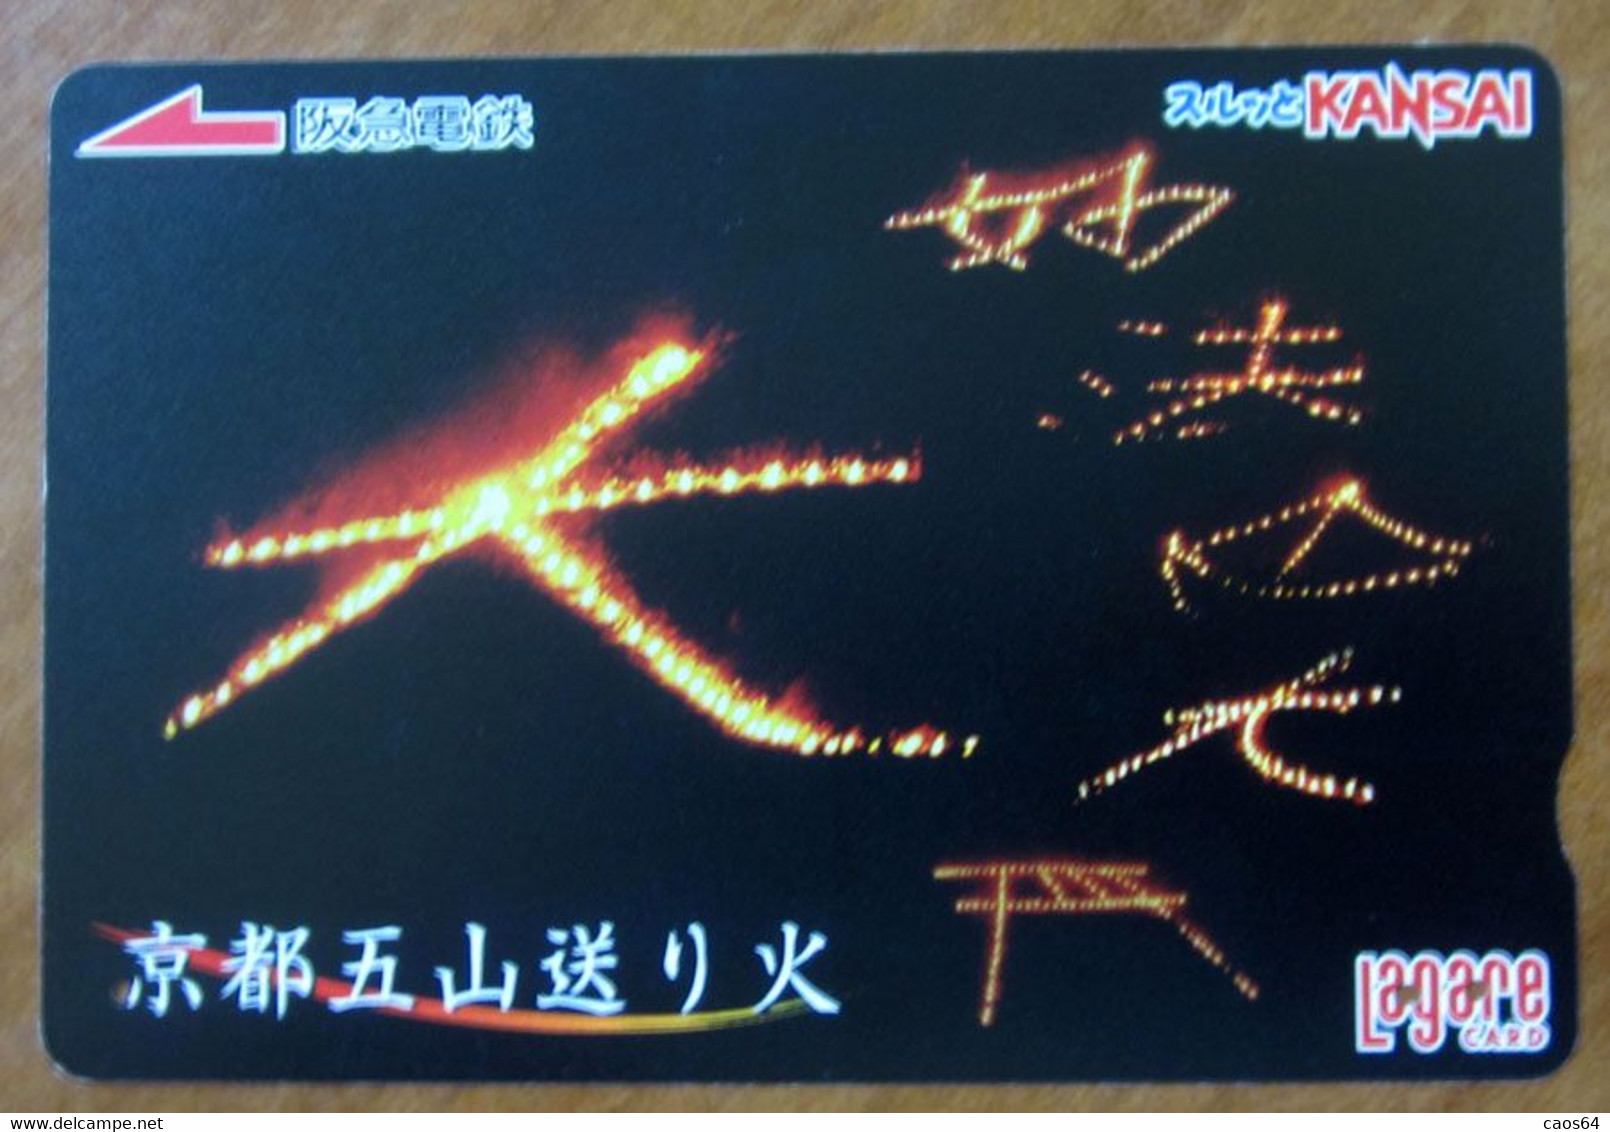 GIAPPONE Ticket Biglietto Alfabeto Lettere - Kansai Railway  Card 1.000 ¥ - Usato - Mundo